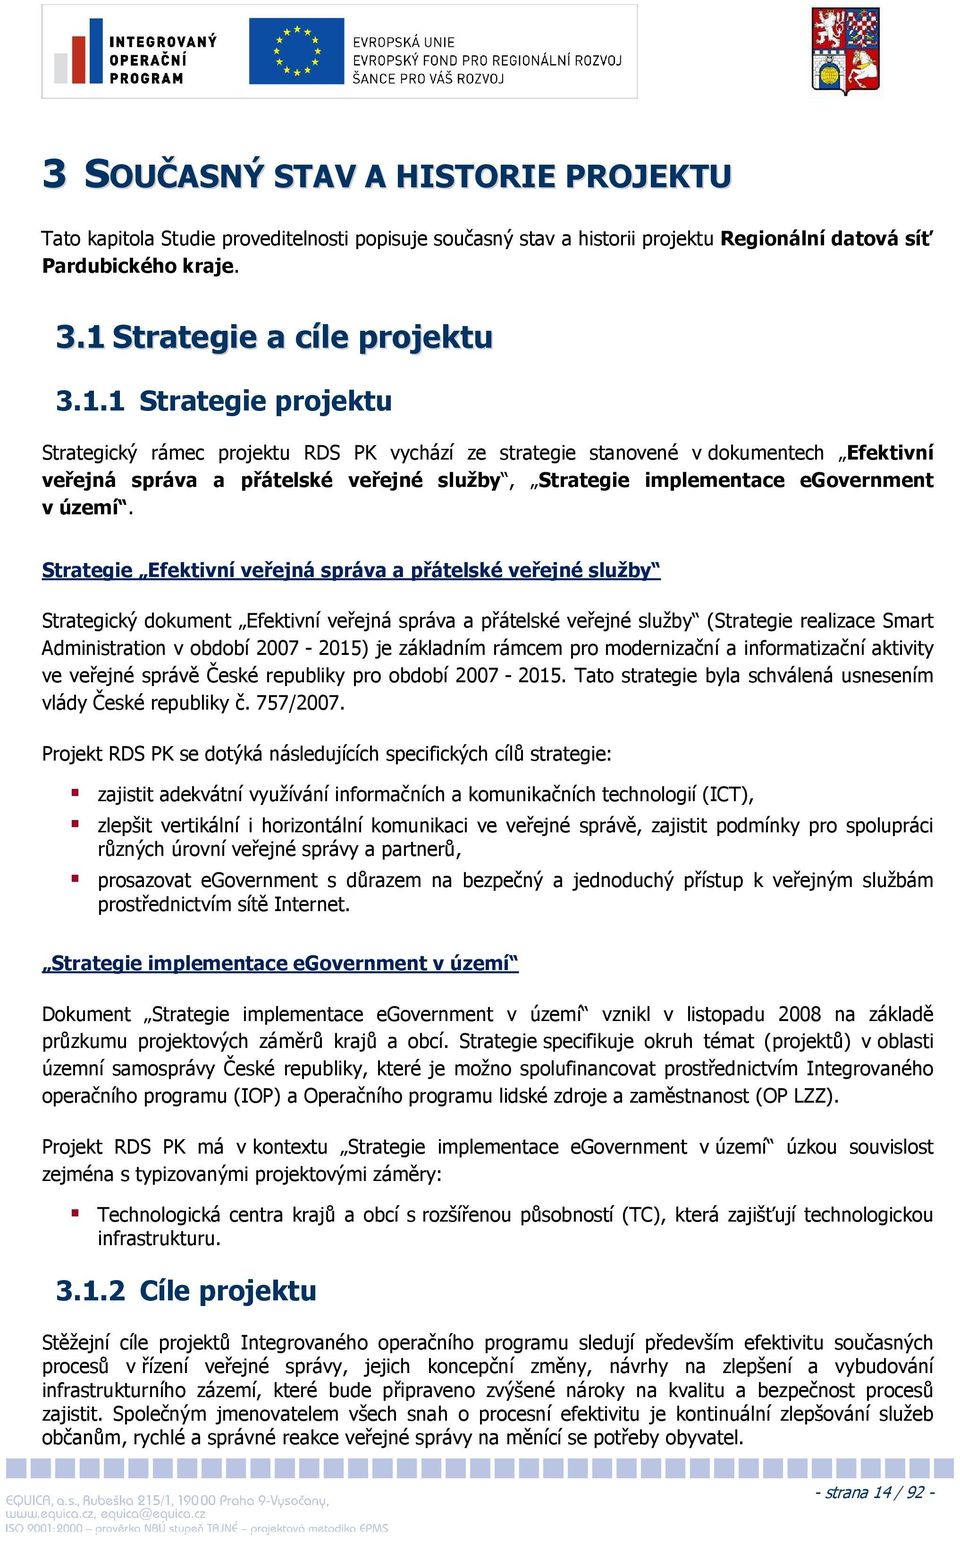 1 Strategie projektu Strategický rámec projektu RDS PK vychází ze strategie stanovené v dokumentech Efektivní veřejná správa a přátelské veřejné služby, Strategie implementace egovernment v území.